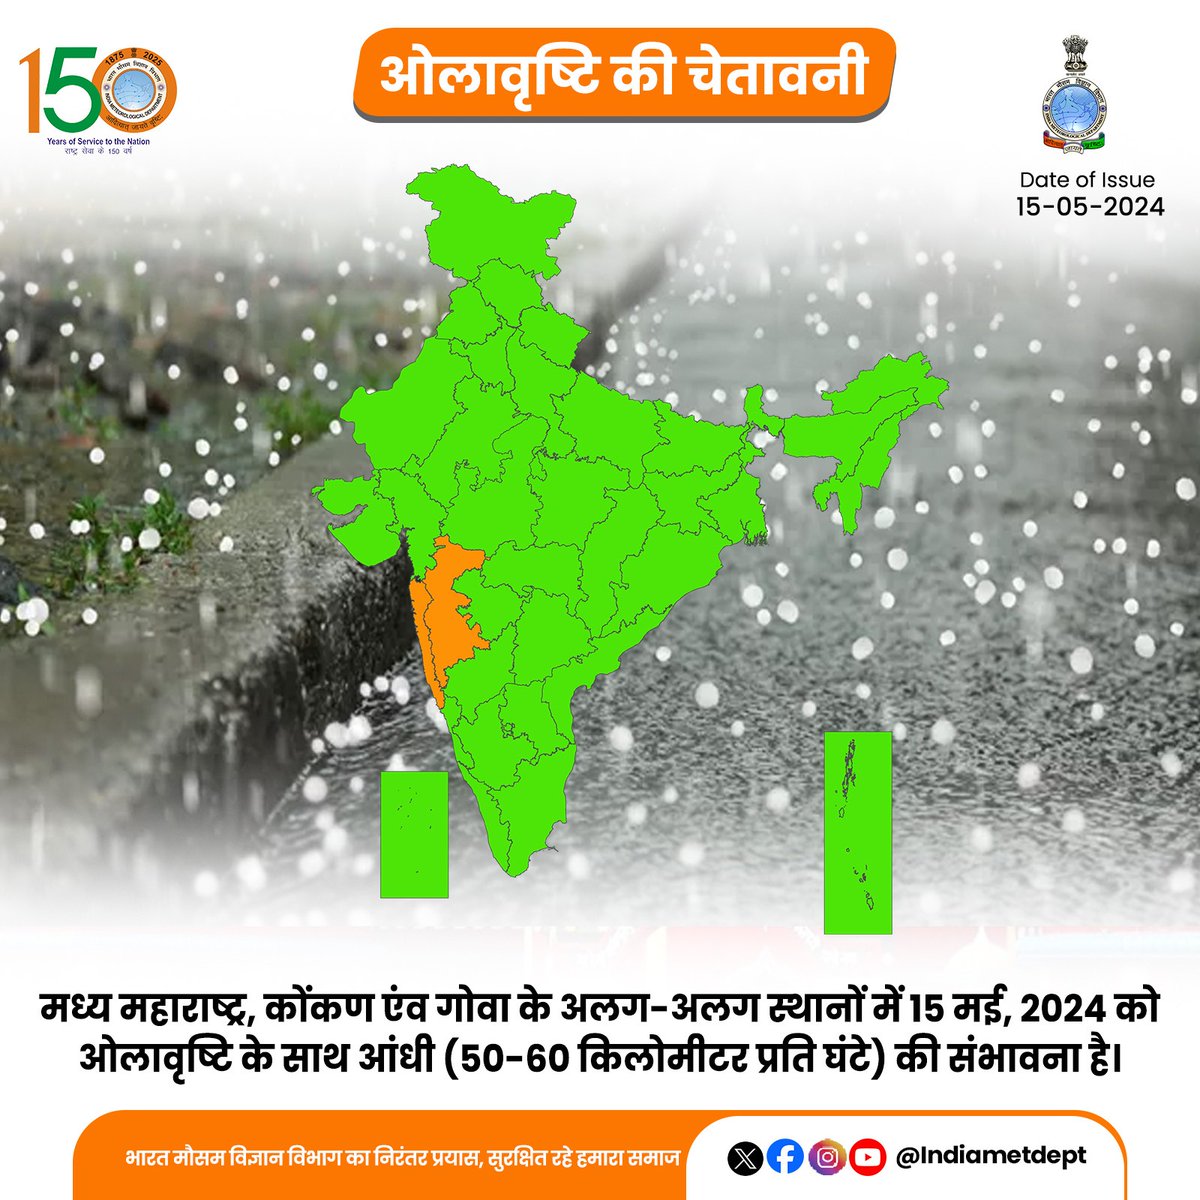 मध्य महाराष्ट्र, कोंकण एंव गोवा के अलग-अलग स्थानों में 15 मई, 2024 को ओलावृष्टि के साथ आंधी (50-60 किलोमीटर प्रति घंटे) की संभावना है।

#hailstormalert #weatherupdate #hailstorm

@moesgoi @DDNewslive @ndmaindia @airnewsalerts